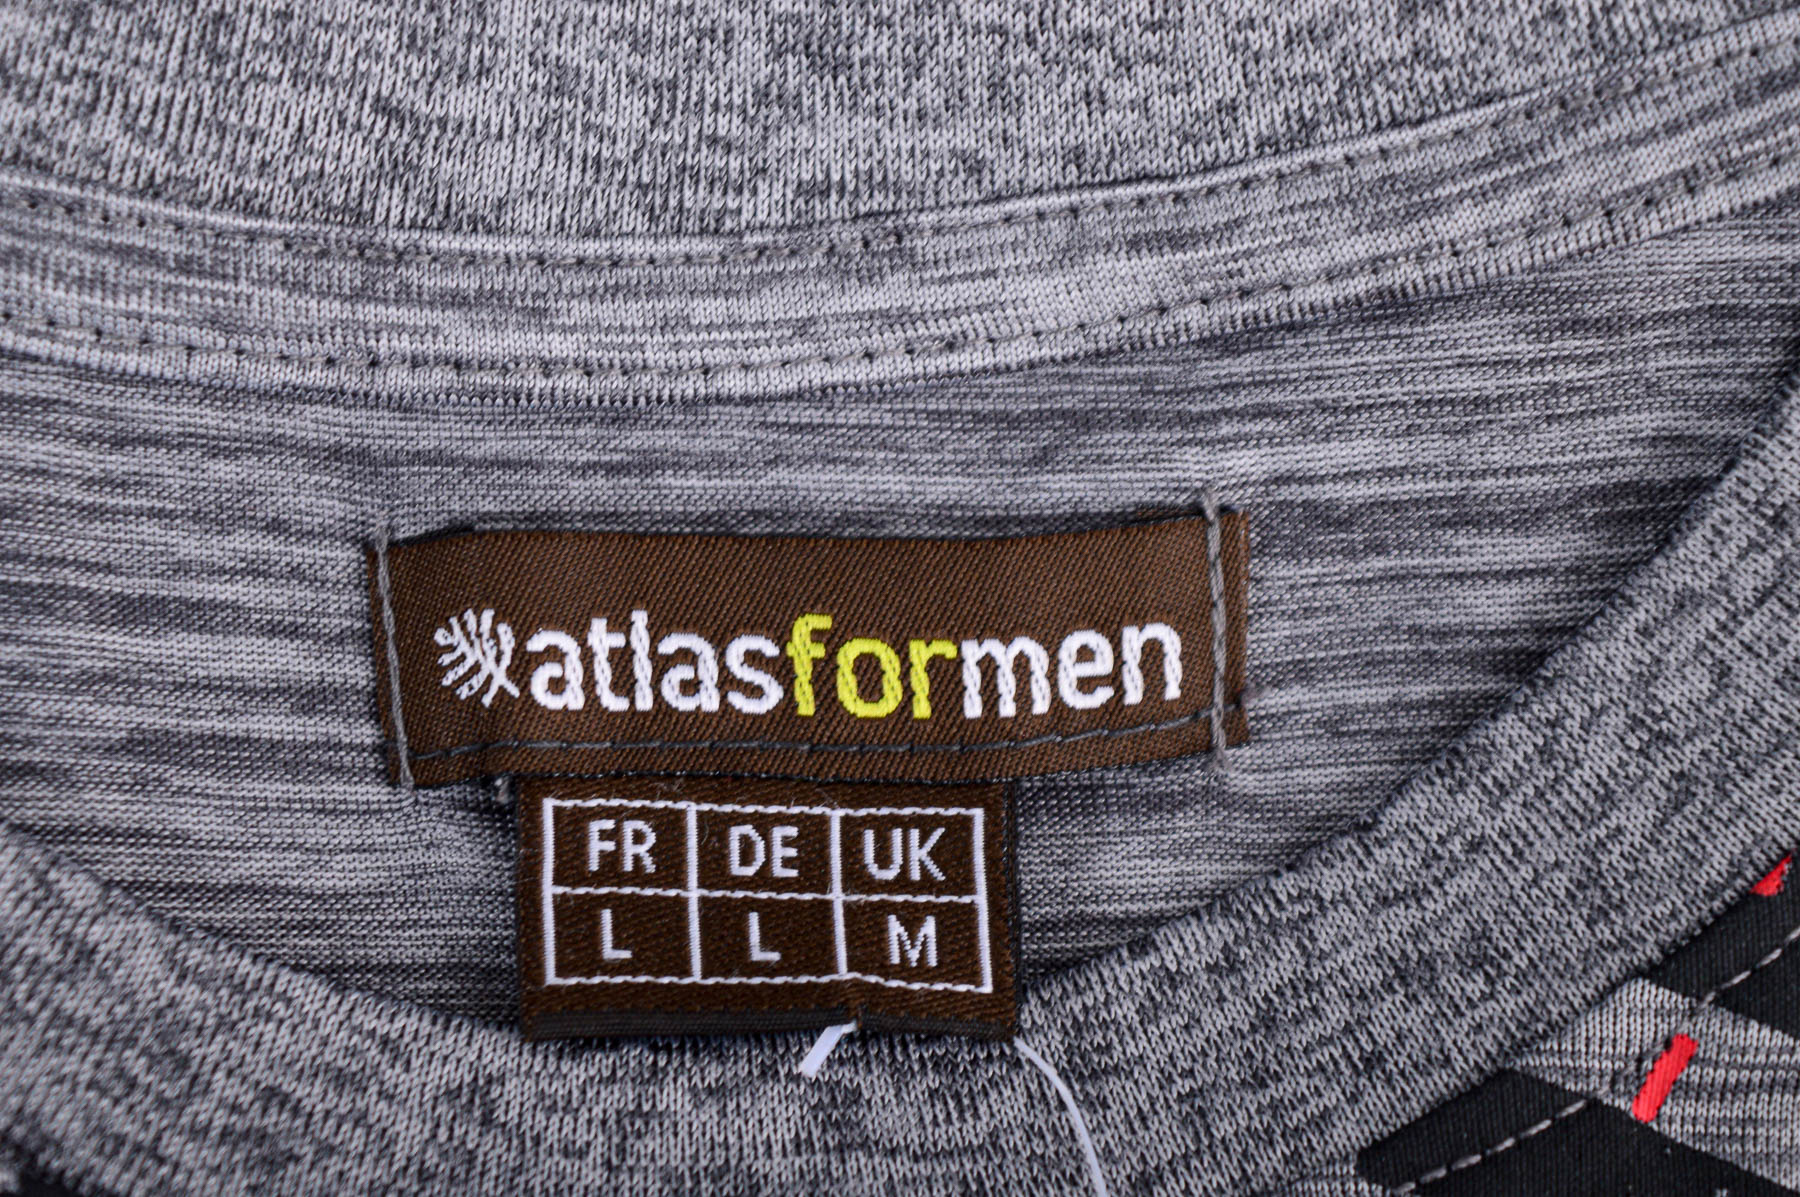 Tricou pentru bărbați - ATLAS for MEN - 2